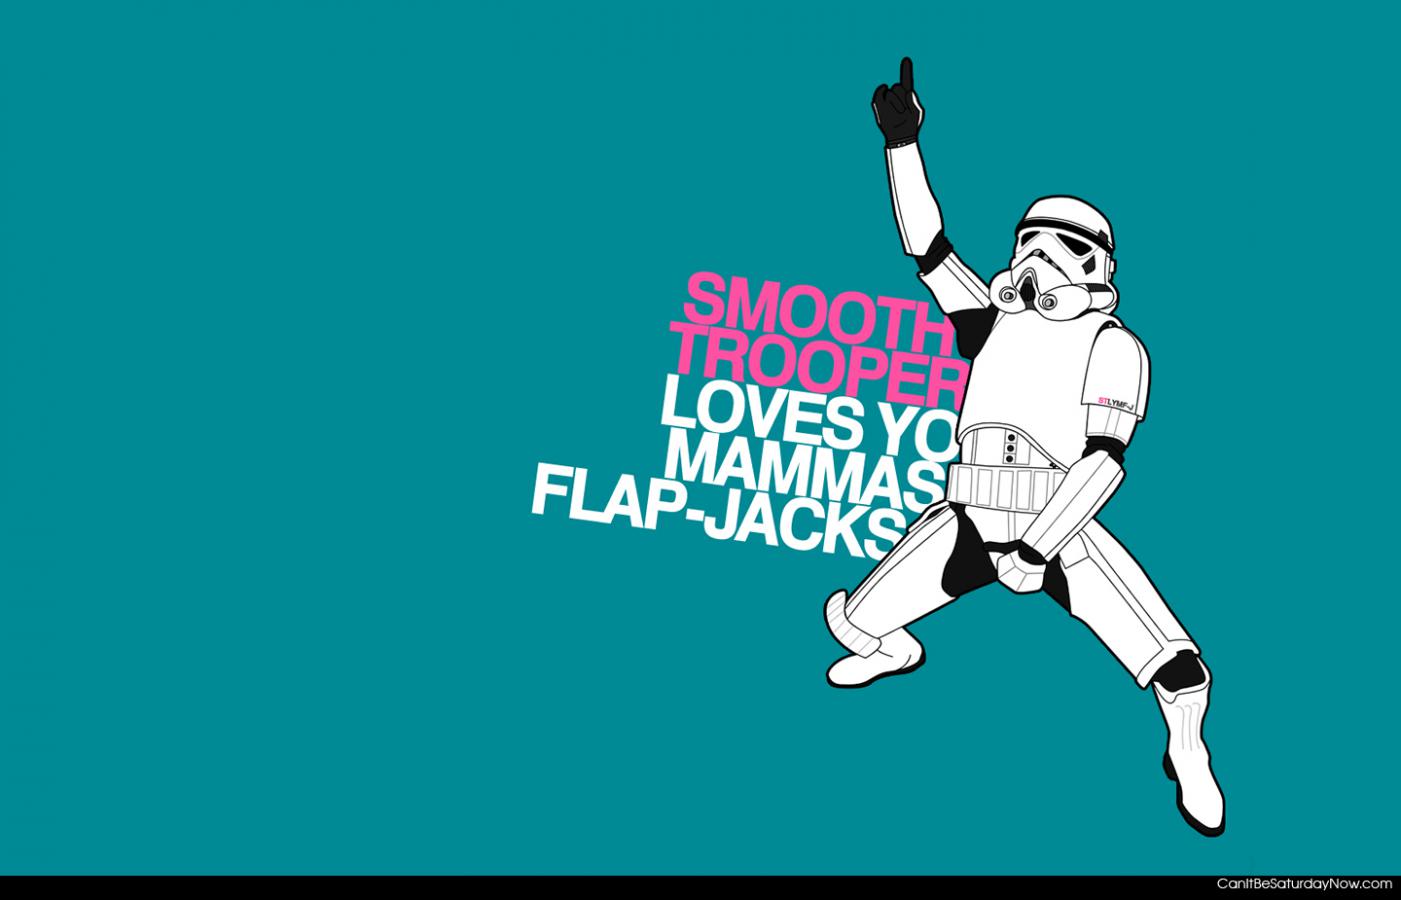 Smooth trooper - he loves flap jacks